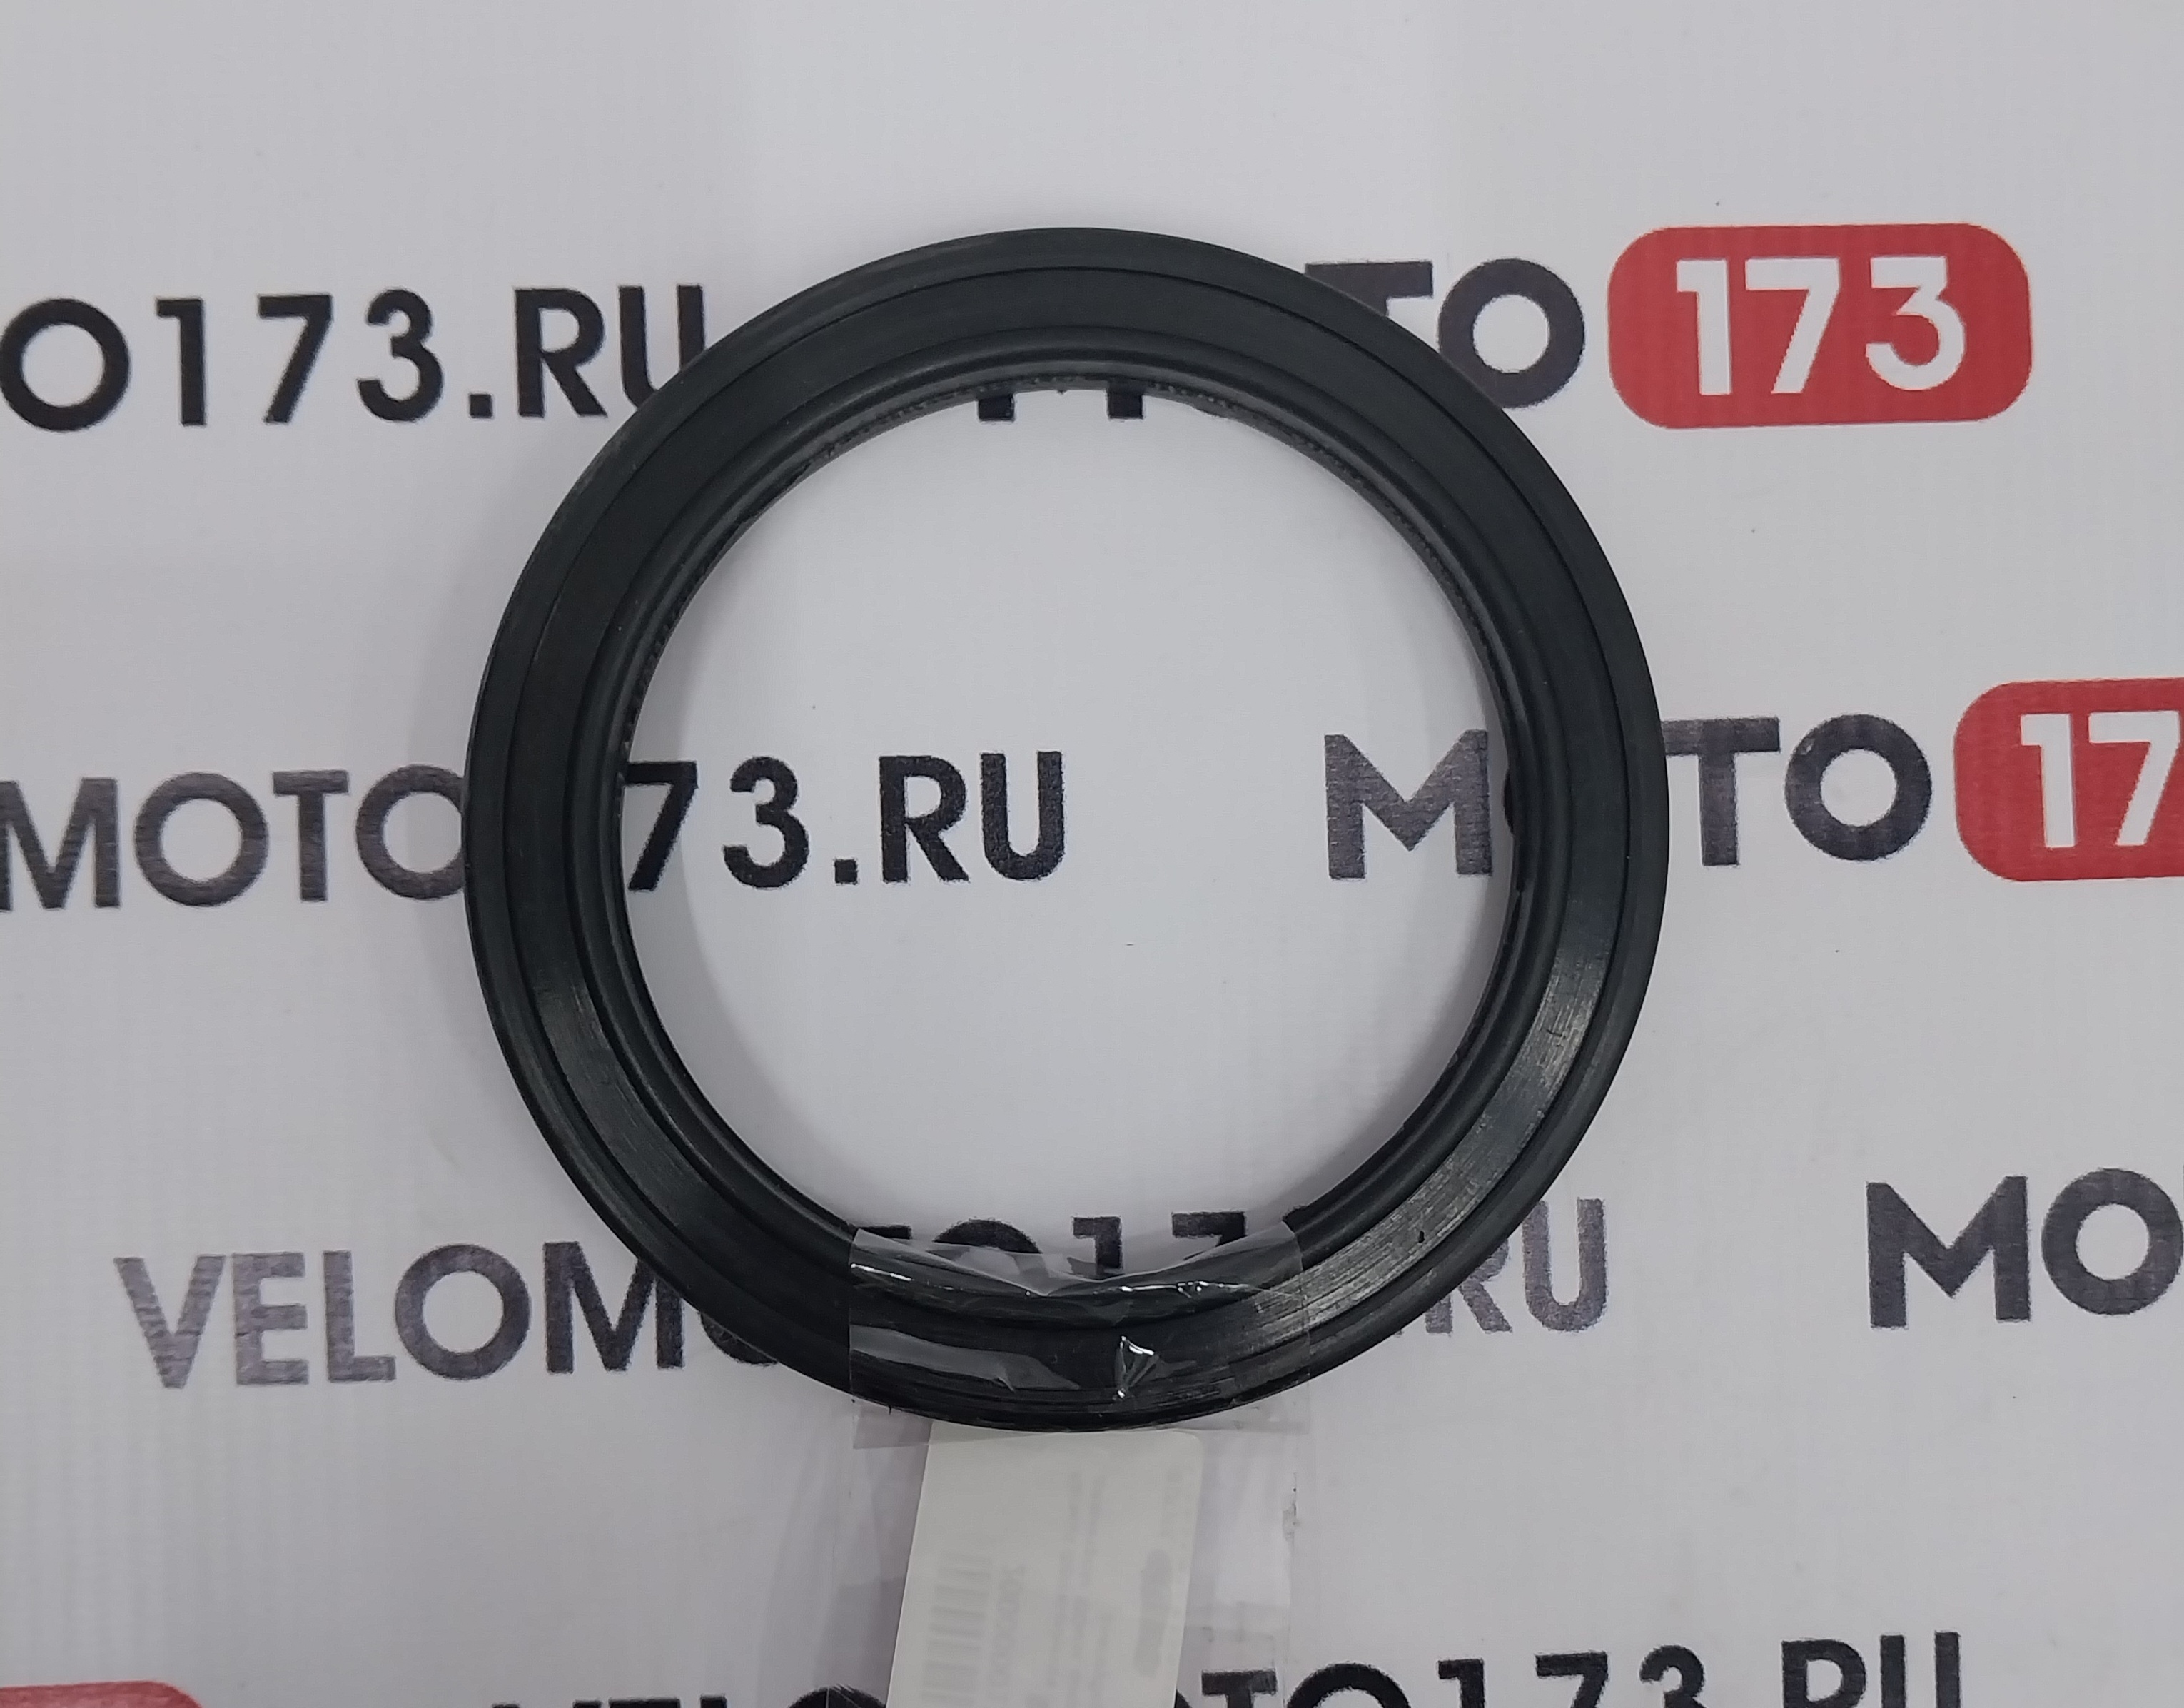 Кольцо фрикционное (резина) на диск диаметром 100мм, широкий профиль (D нар. 129мм, ширина 15,5мм)